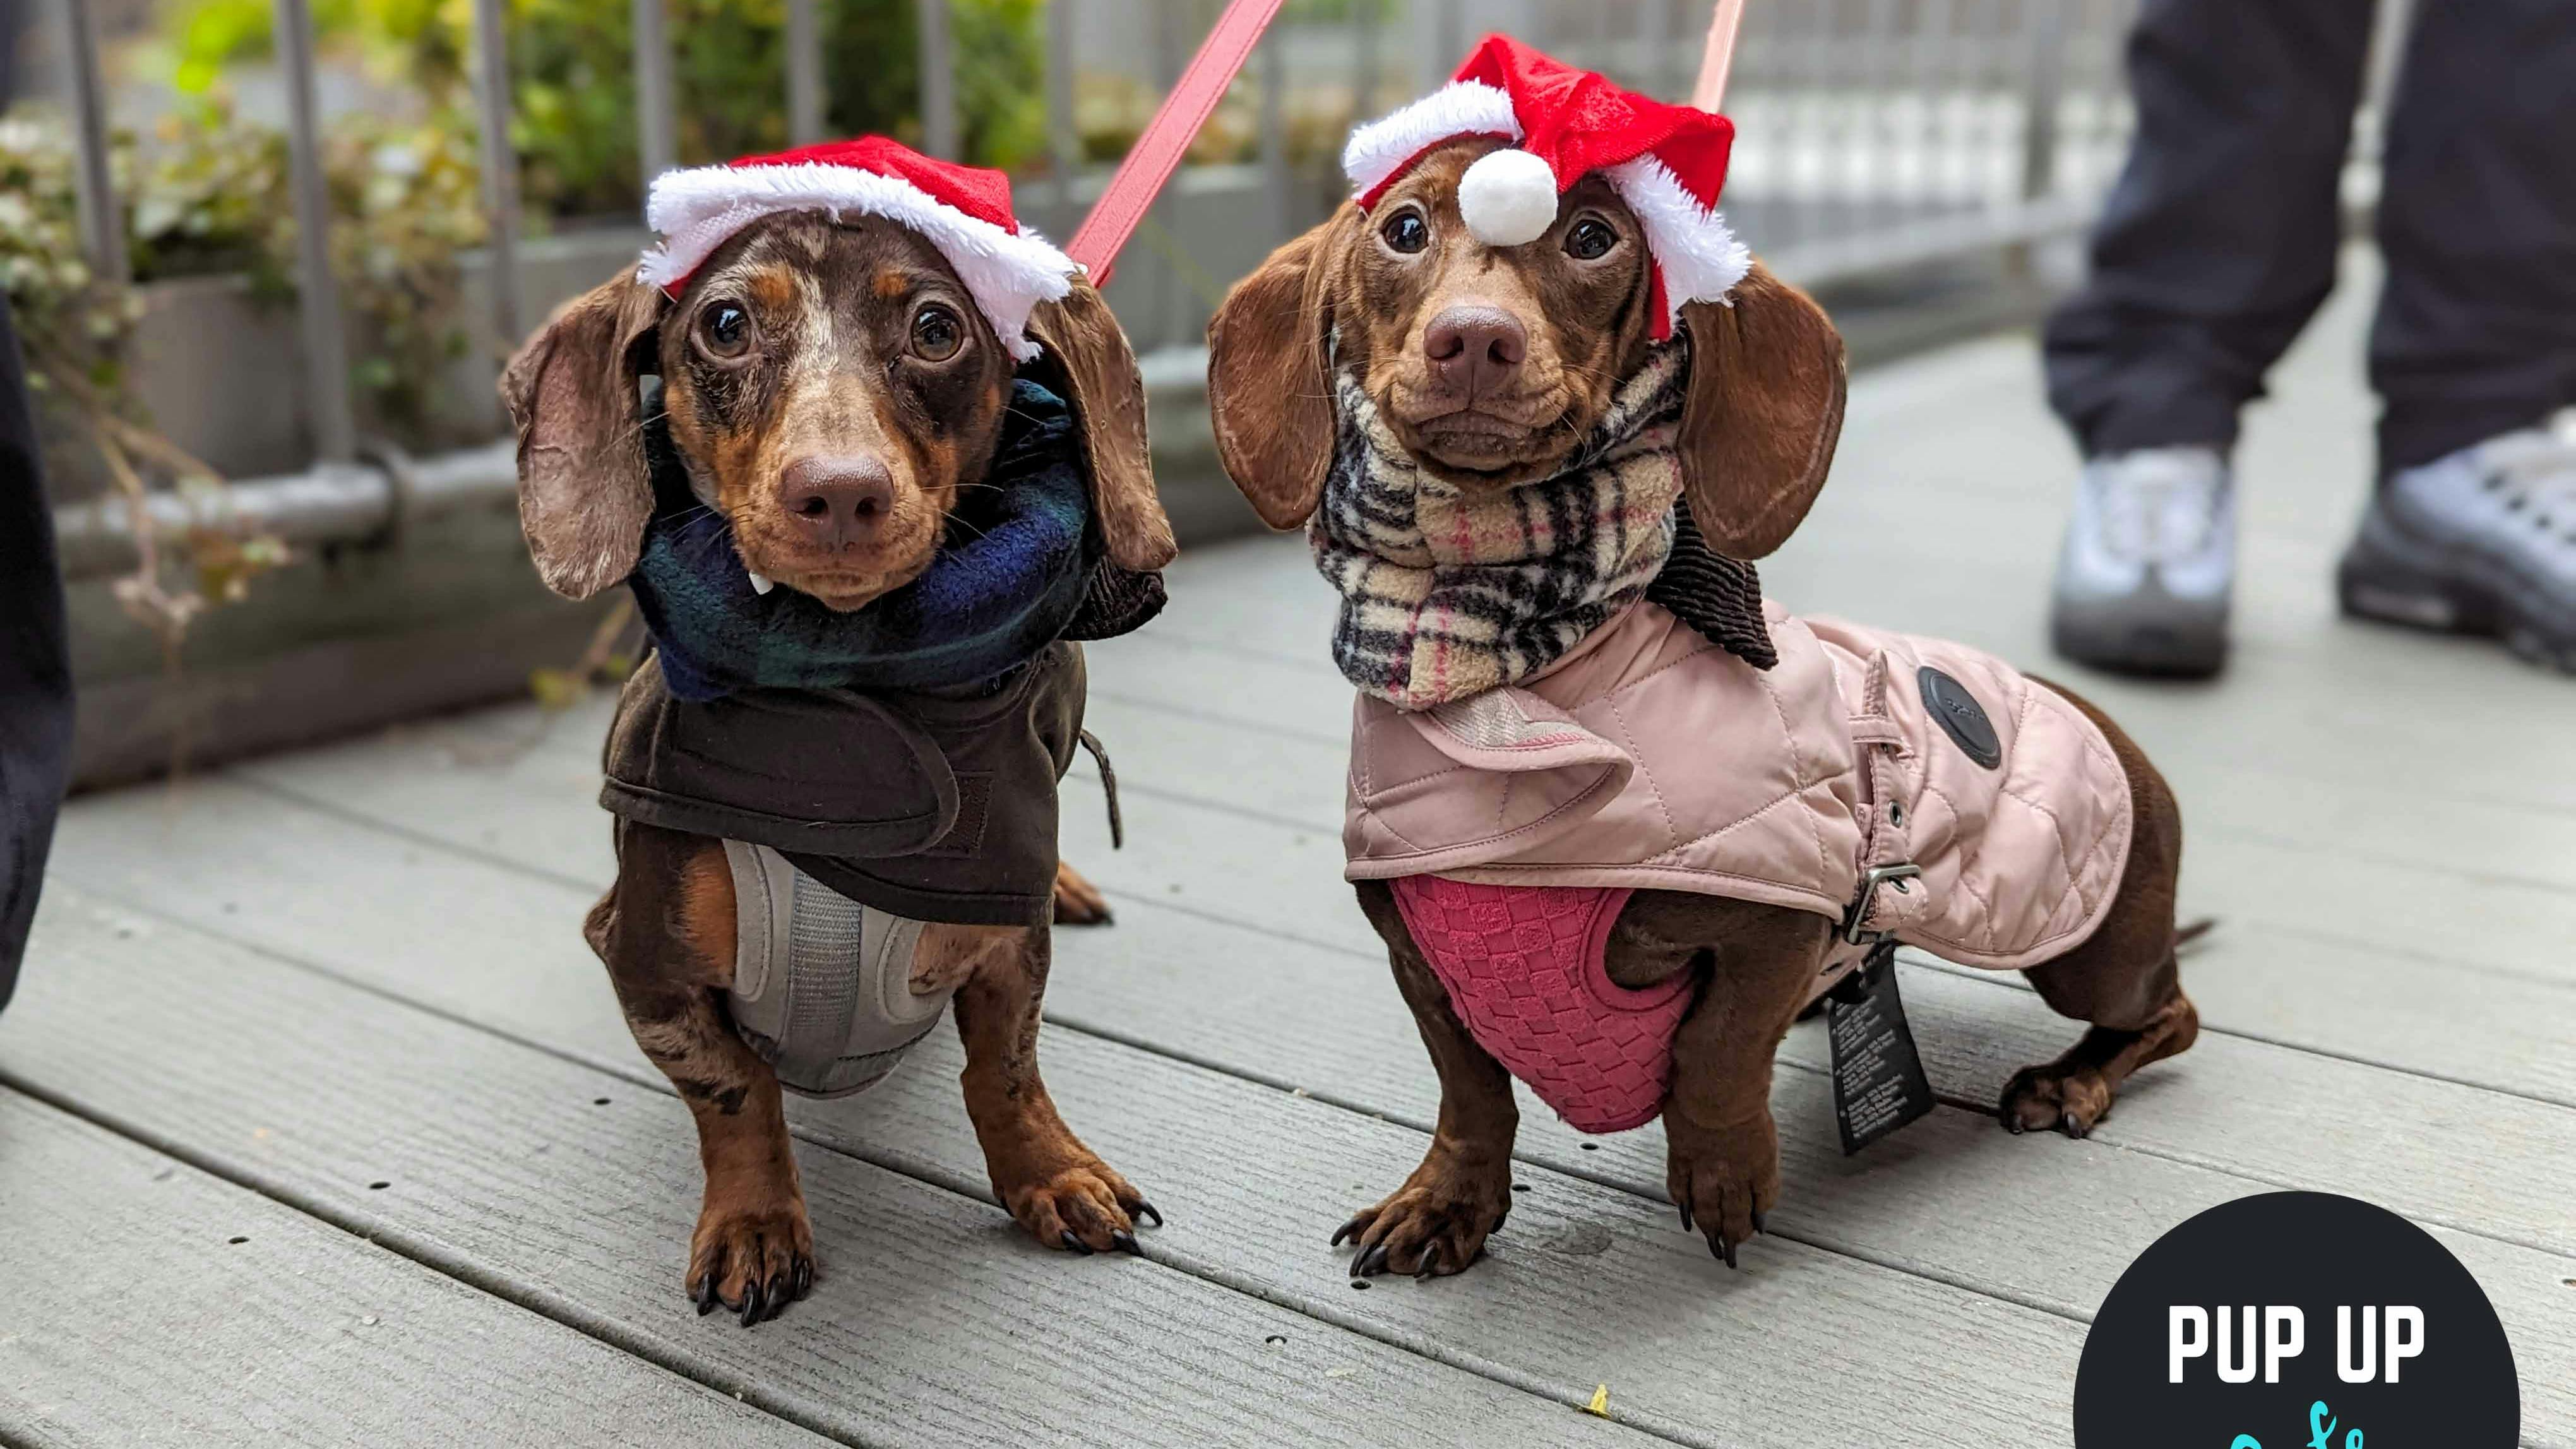 28 adorable photos, sausage dogs meet Santa at Christmas Pup Up Cafe